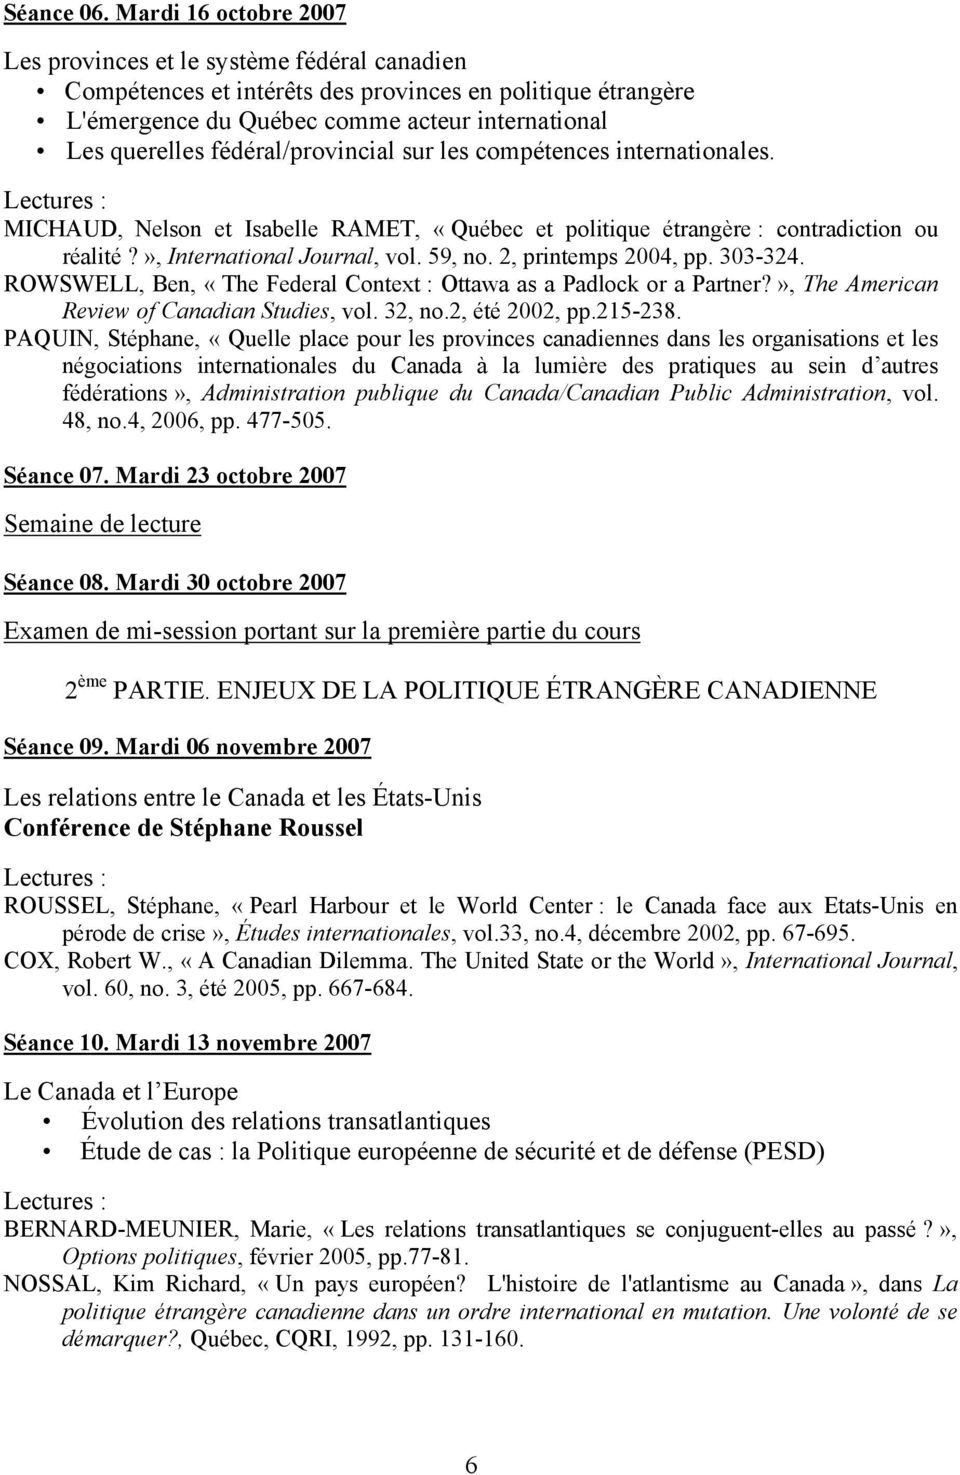 fédéral/provincial sur les compétences internationales. MICHAUD, Nelson et Isabelle RAMET, «Québec et politique étrangère : contradiction ou réalité?», International Journal, vol. 59, no.